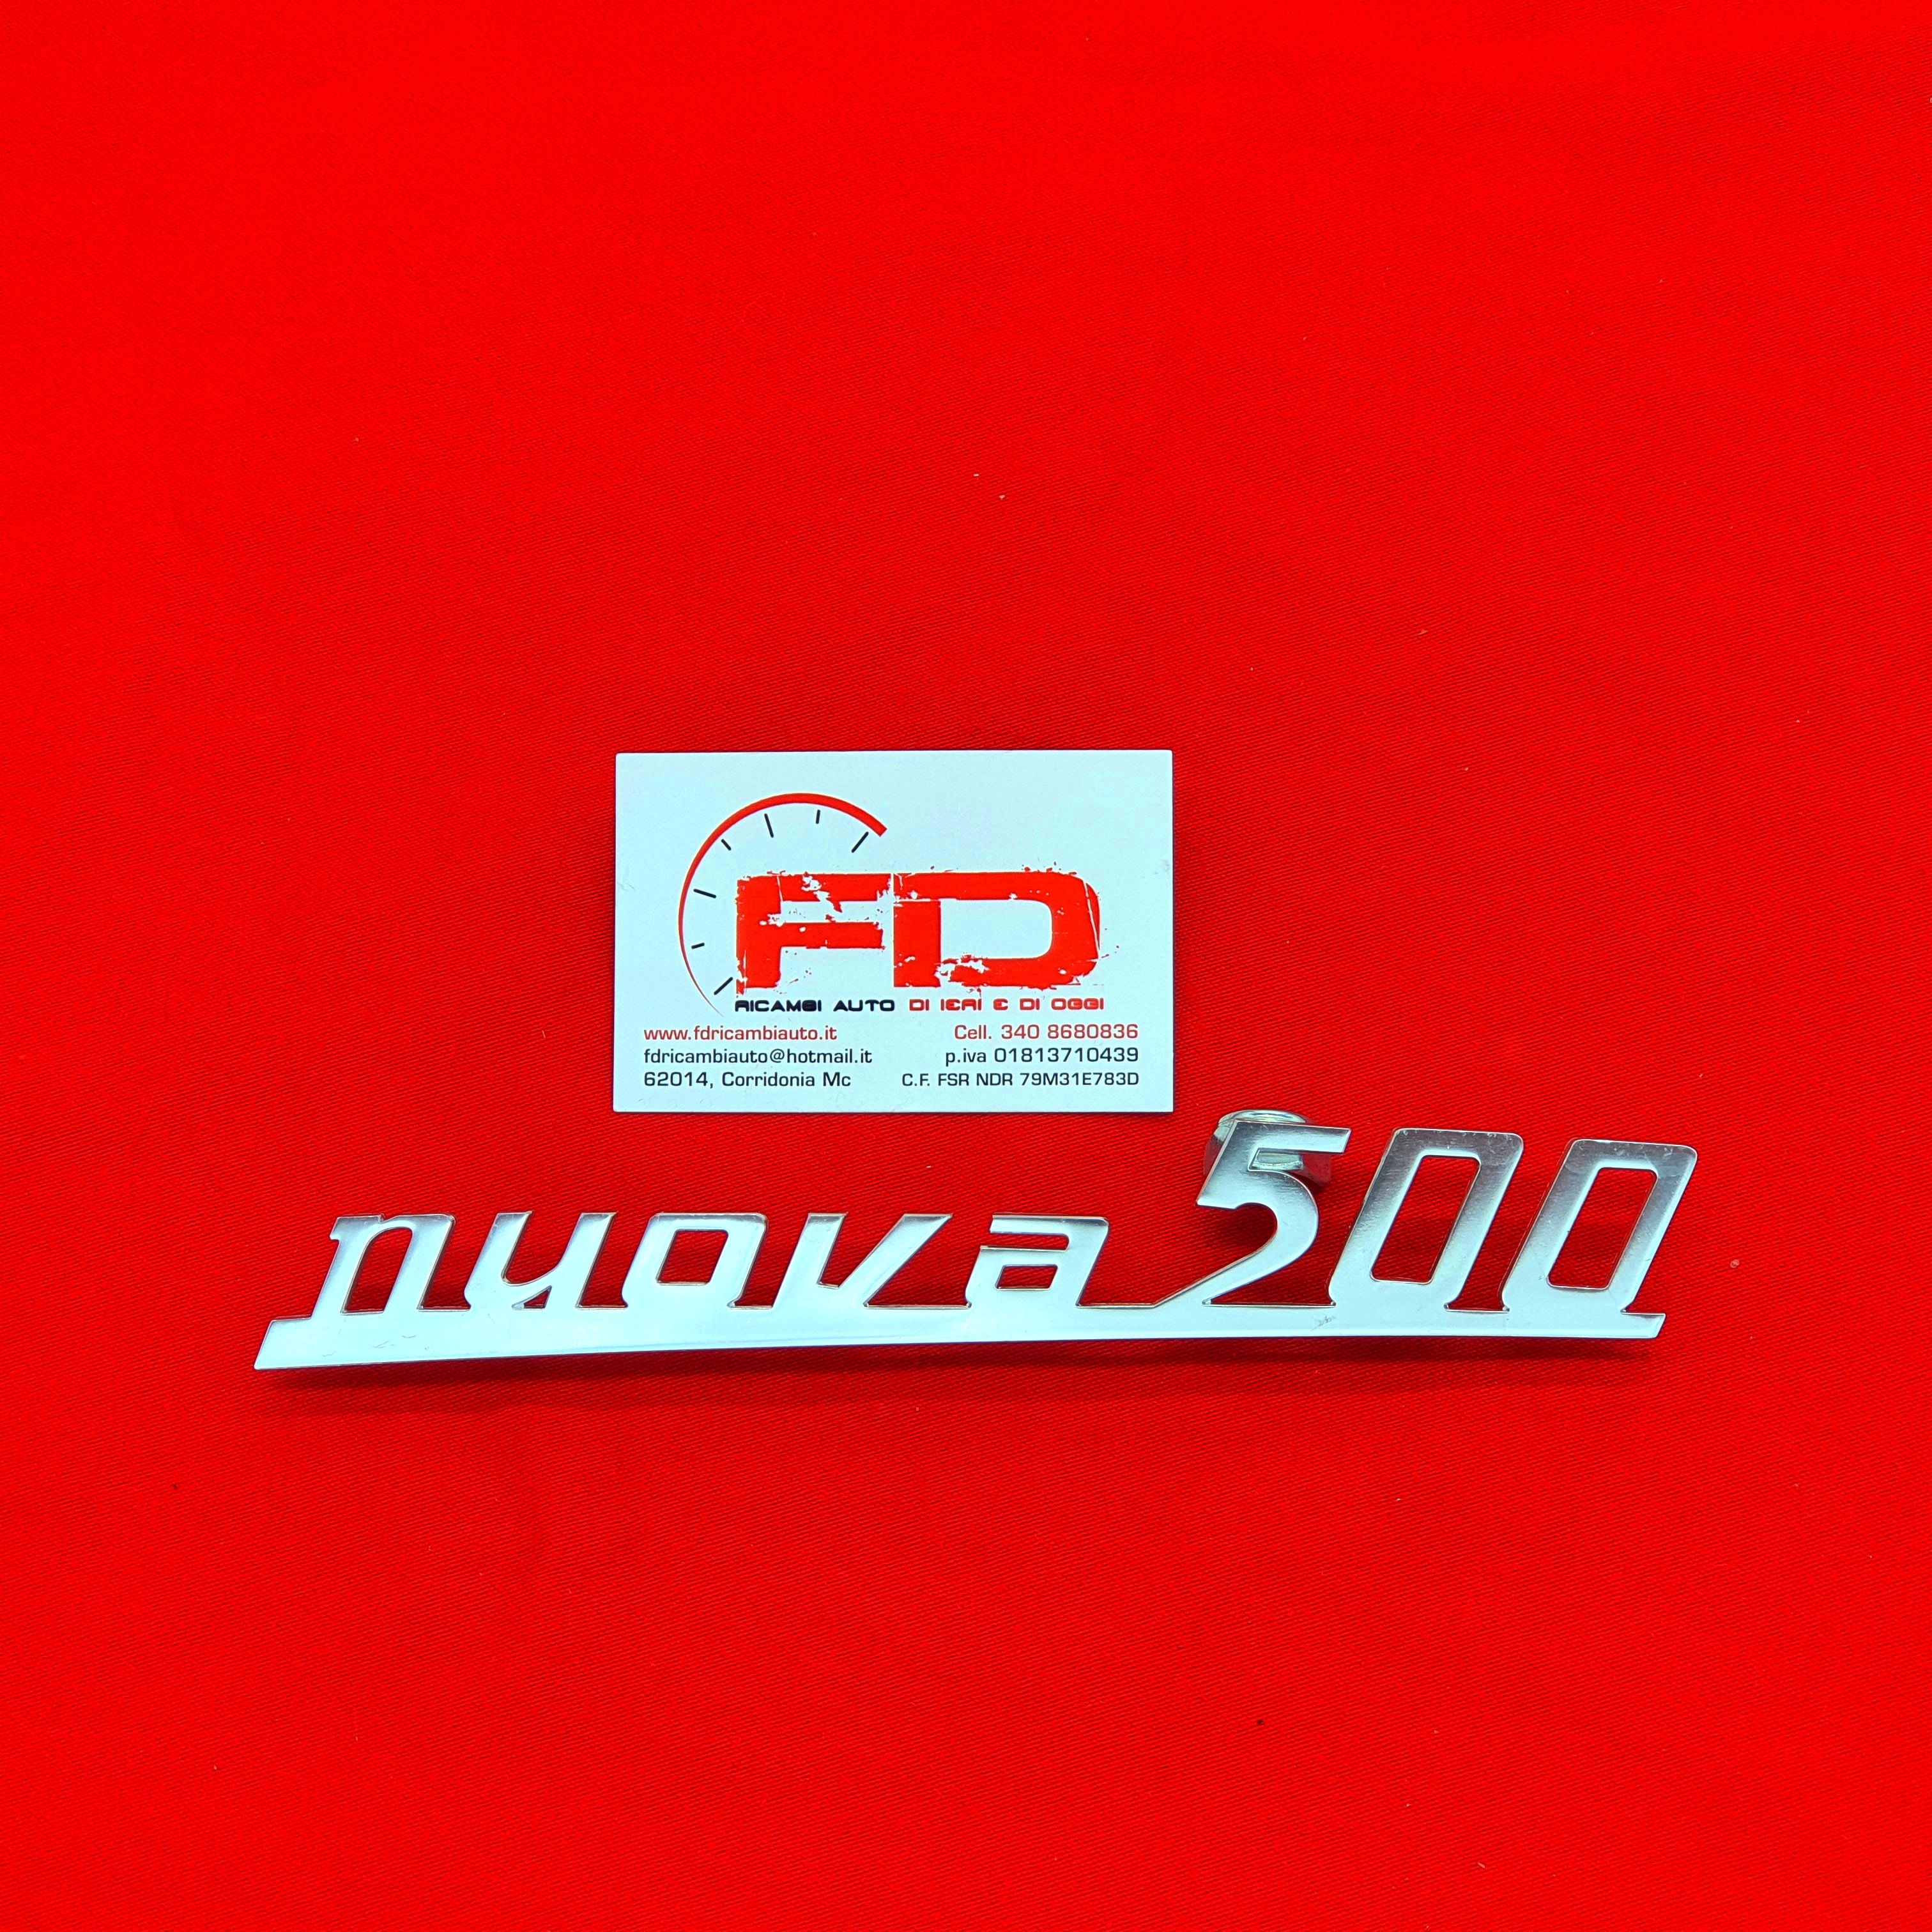 FREGIO POSTERIORE PER FIAT 500 (NUOVA500)